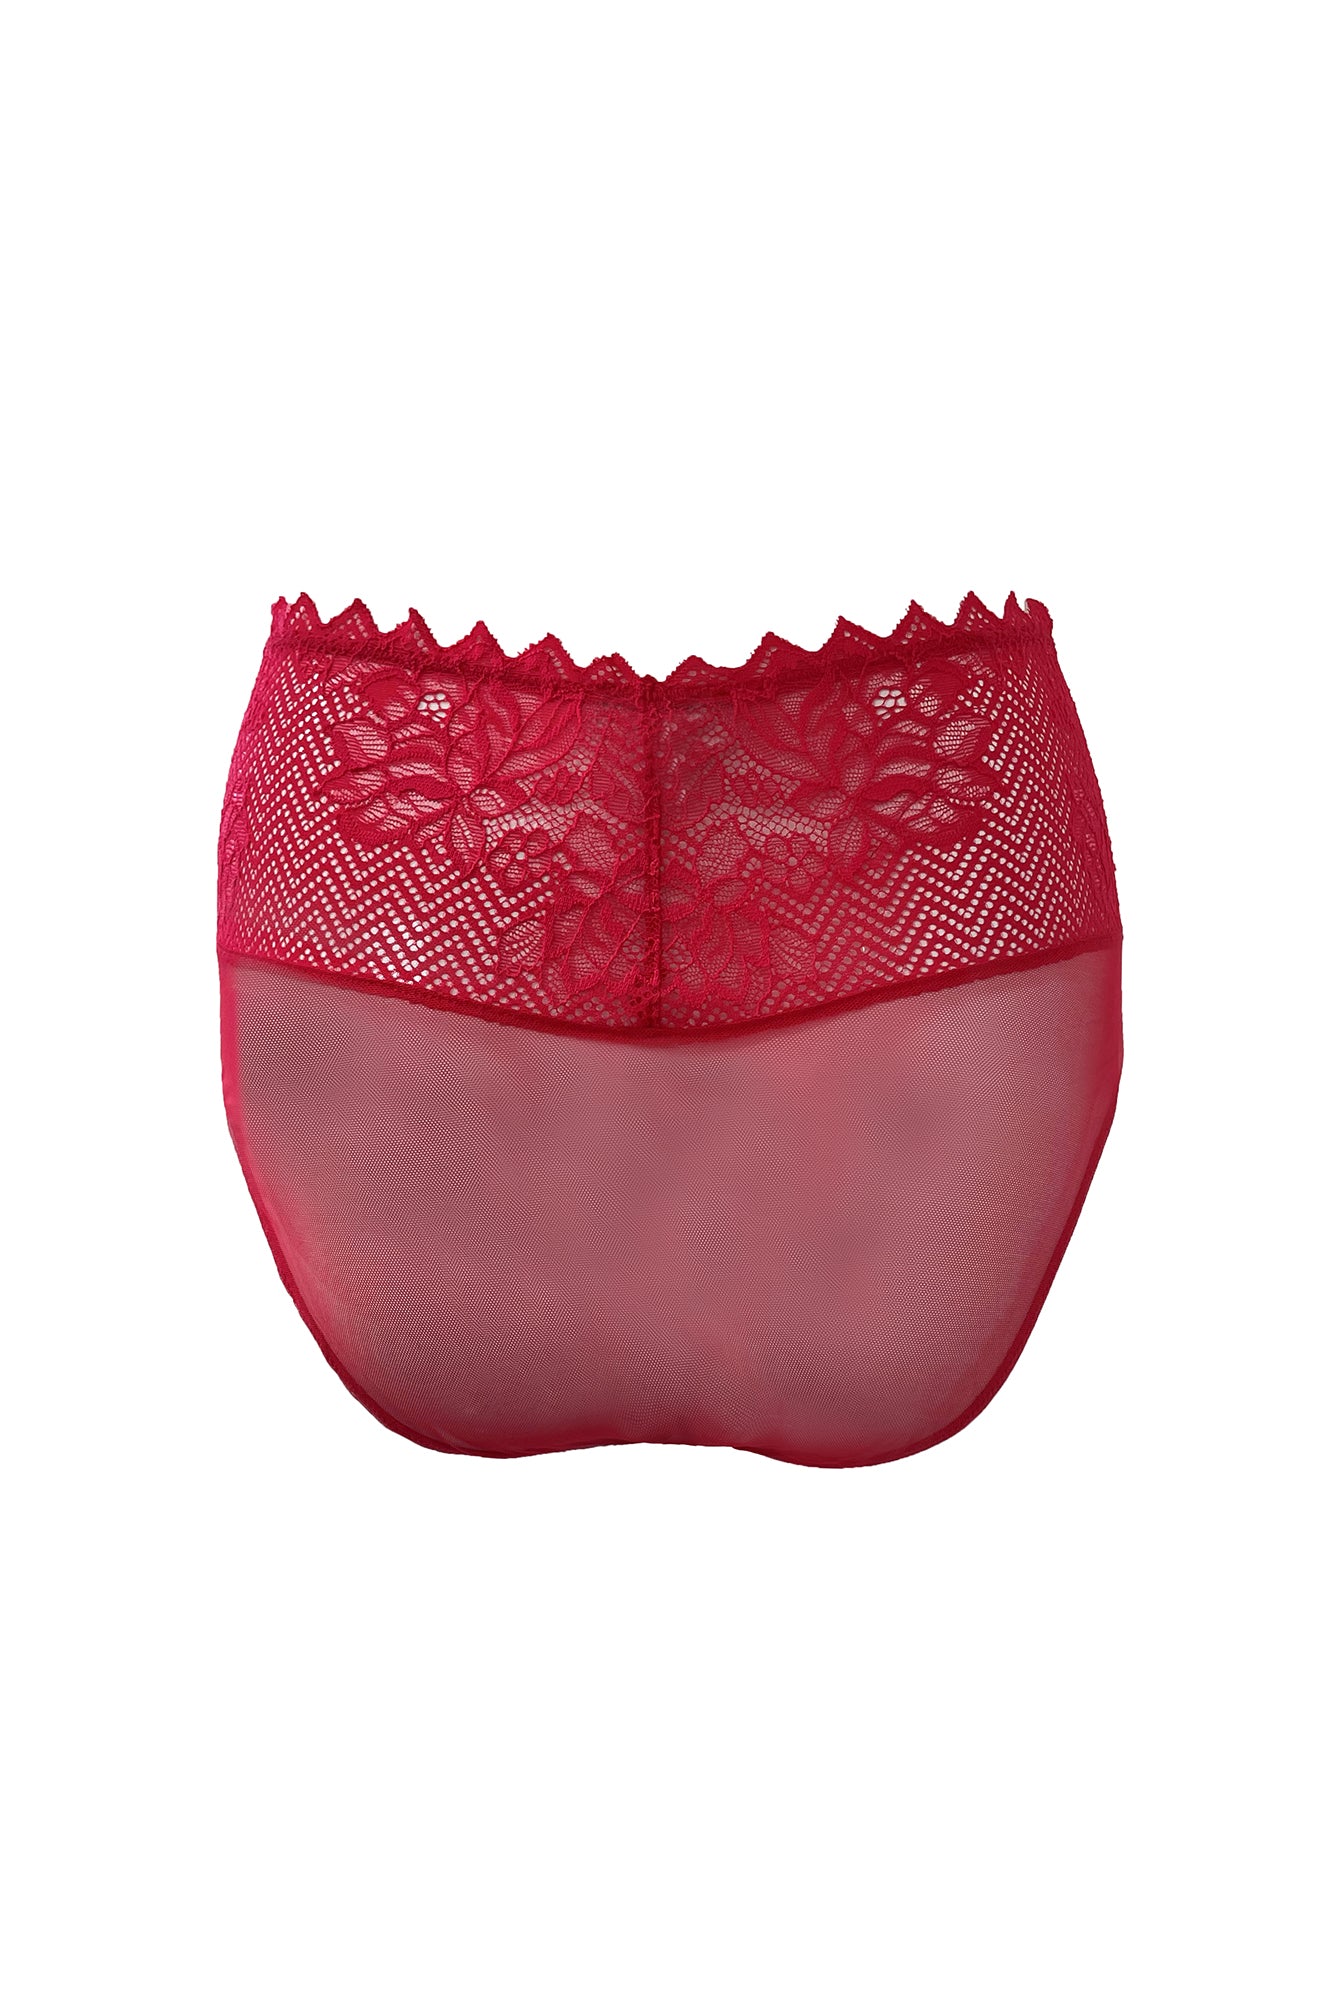 Cosabella Leonora High Rise Floral Lace Bikini Brief | Rossetto Red